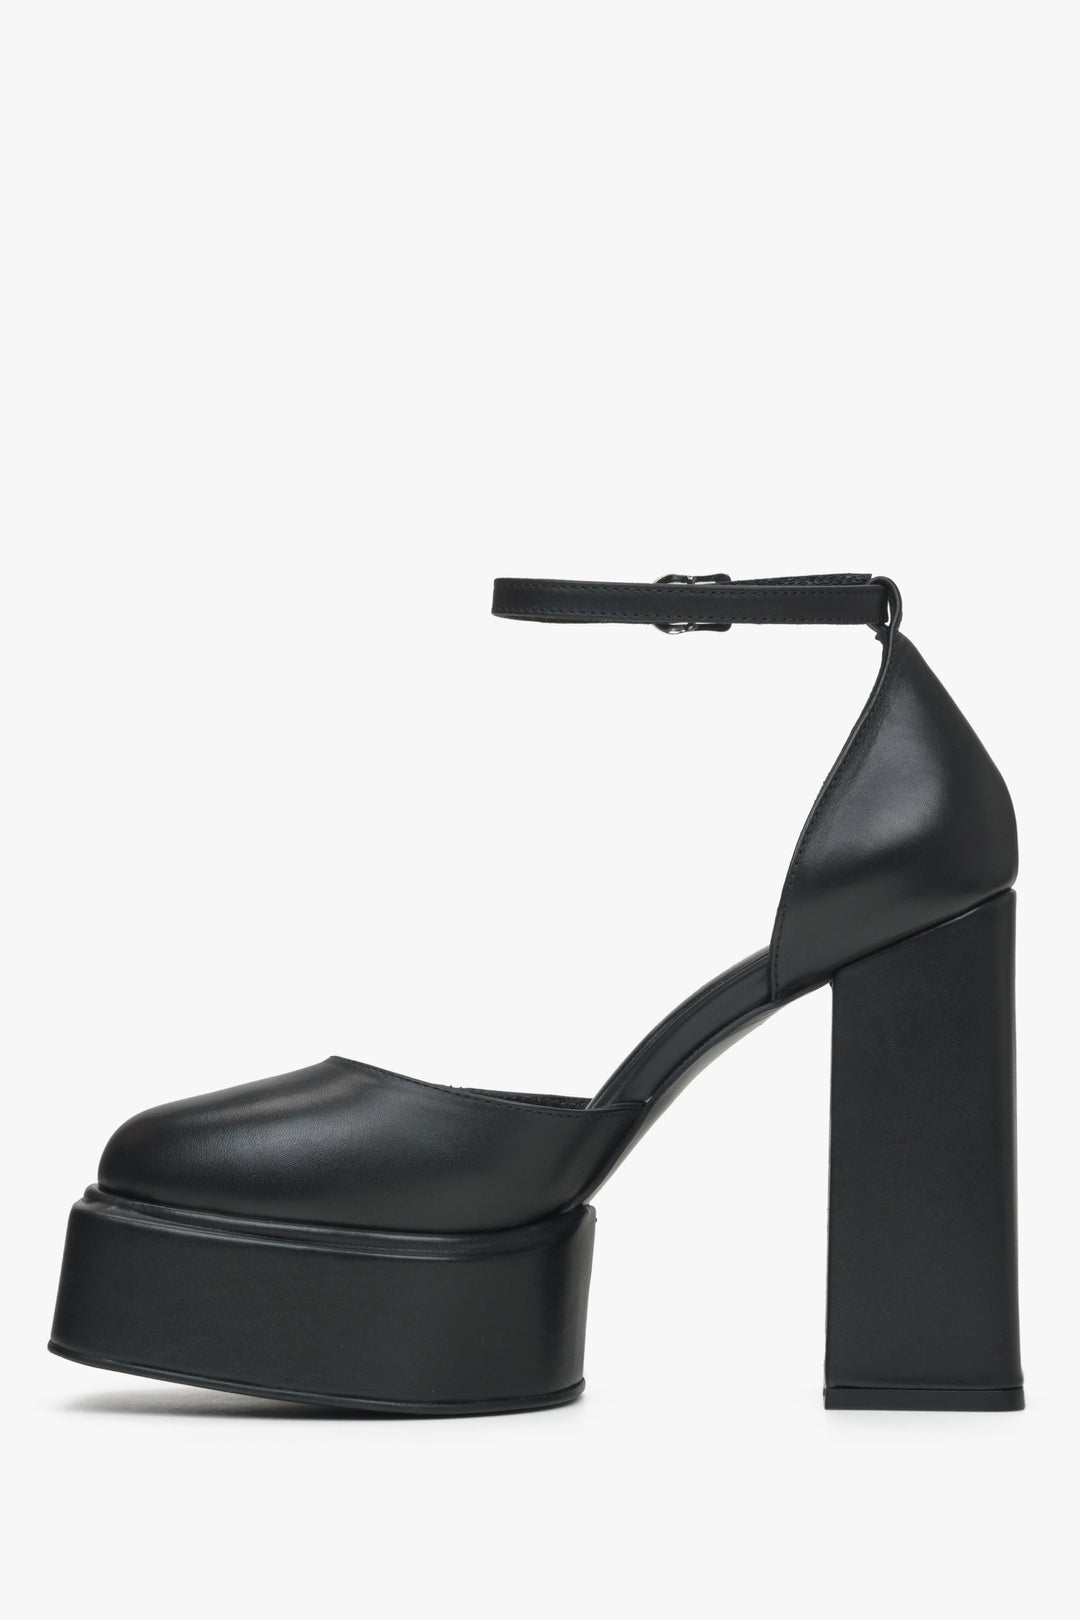 Sandały damskie czarne ze skóry naturalnej Estro - profil butów.